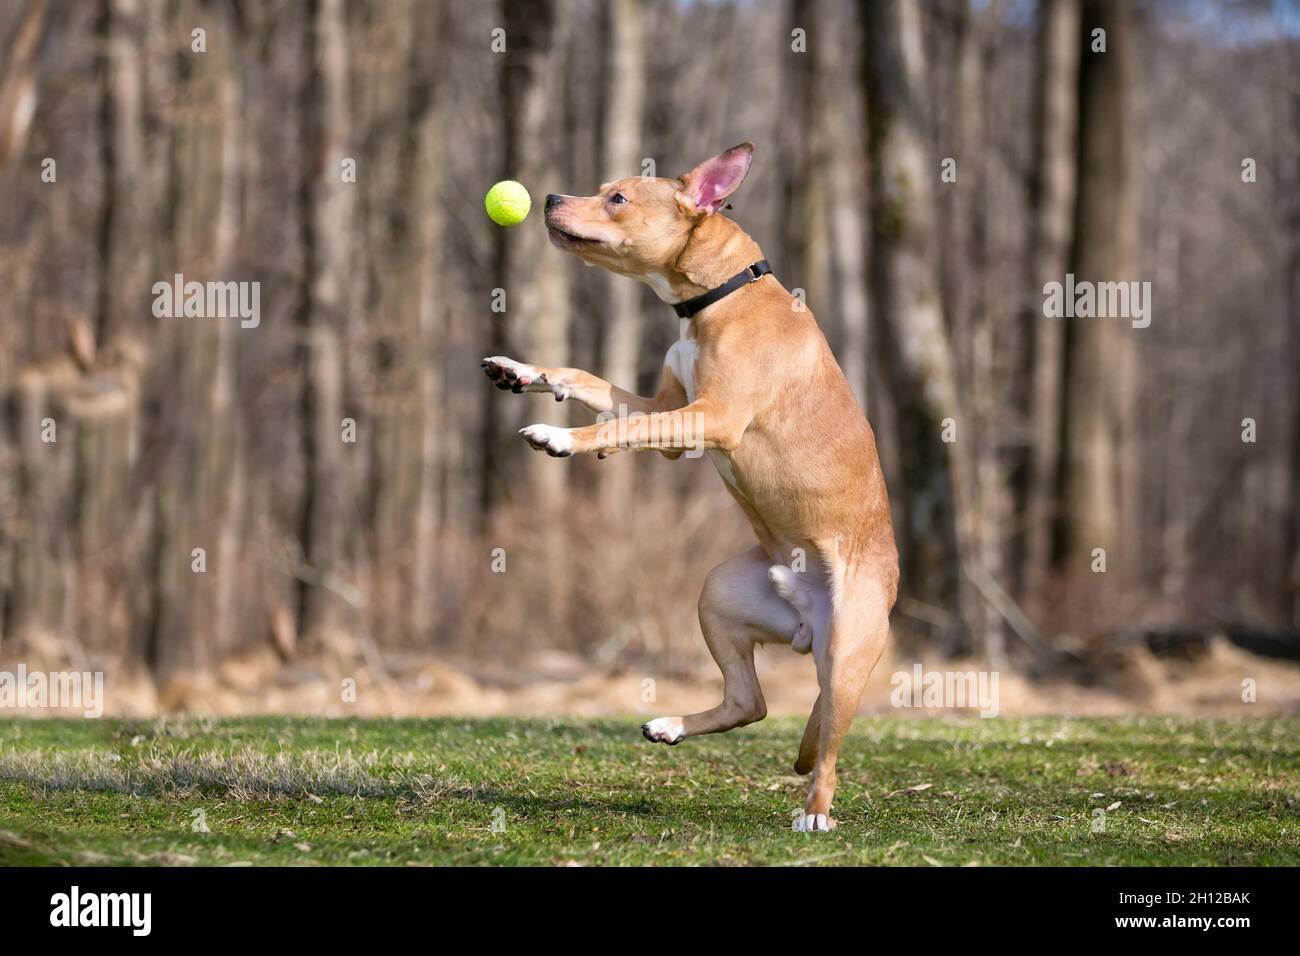 Un perro de raza mixta Retriever saltando para atrapar una pelota en el aire Foto de stock